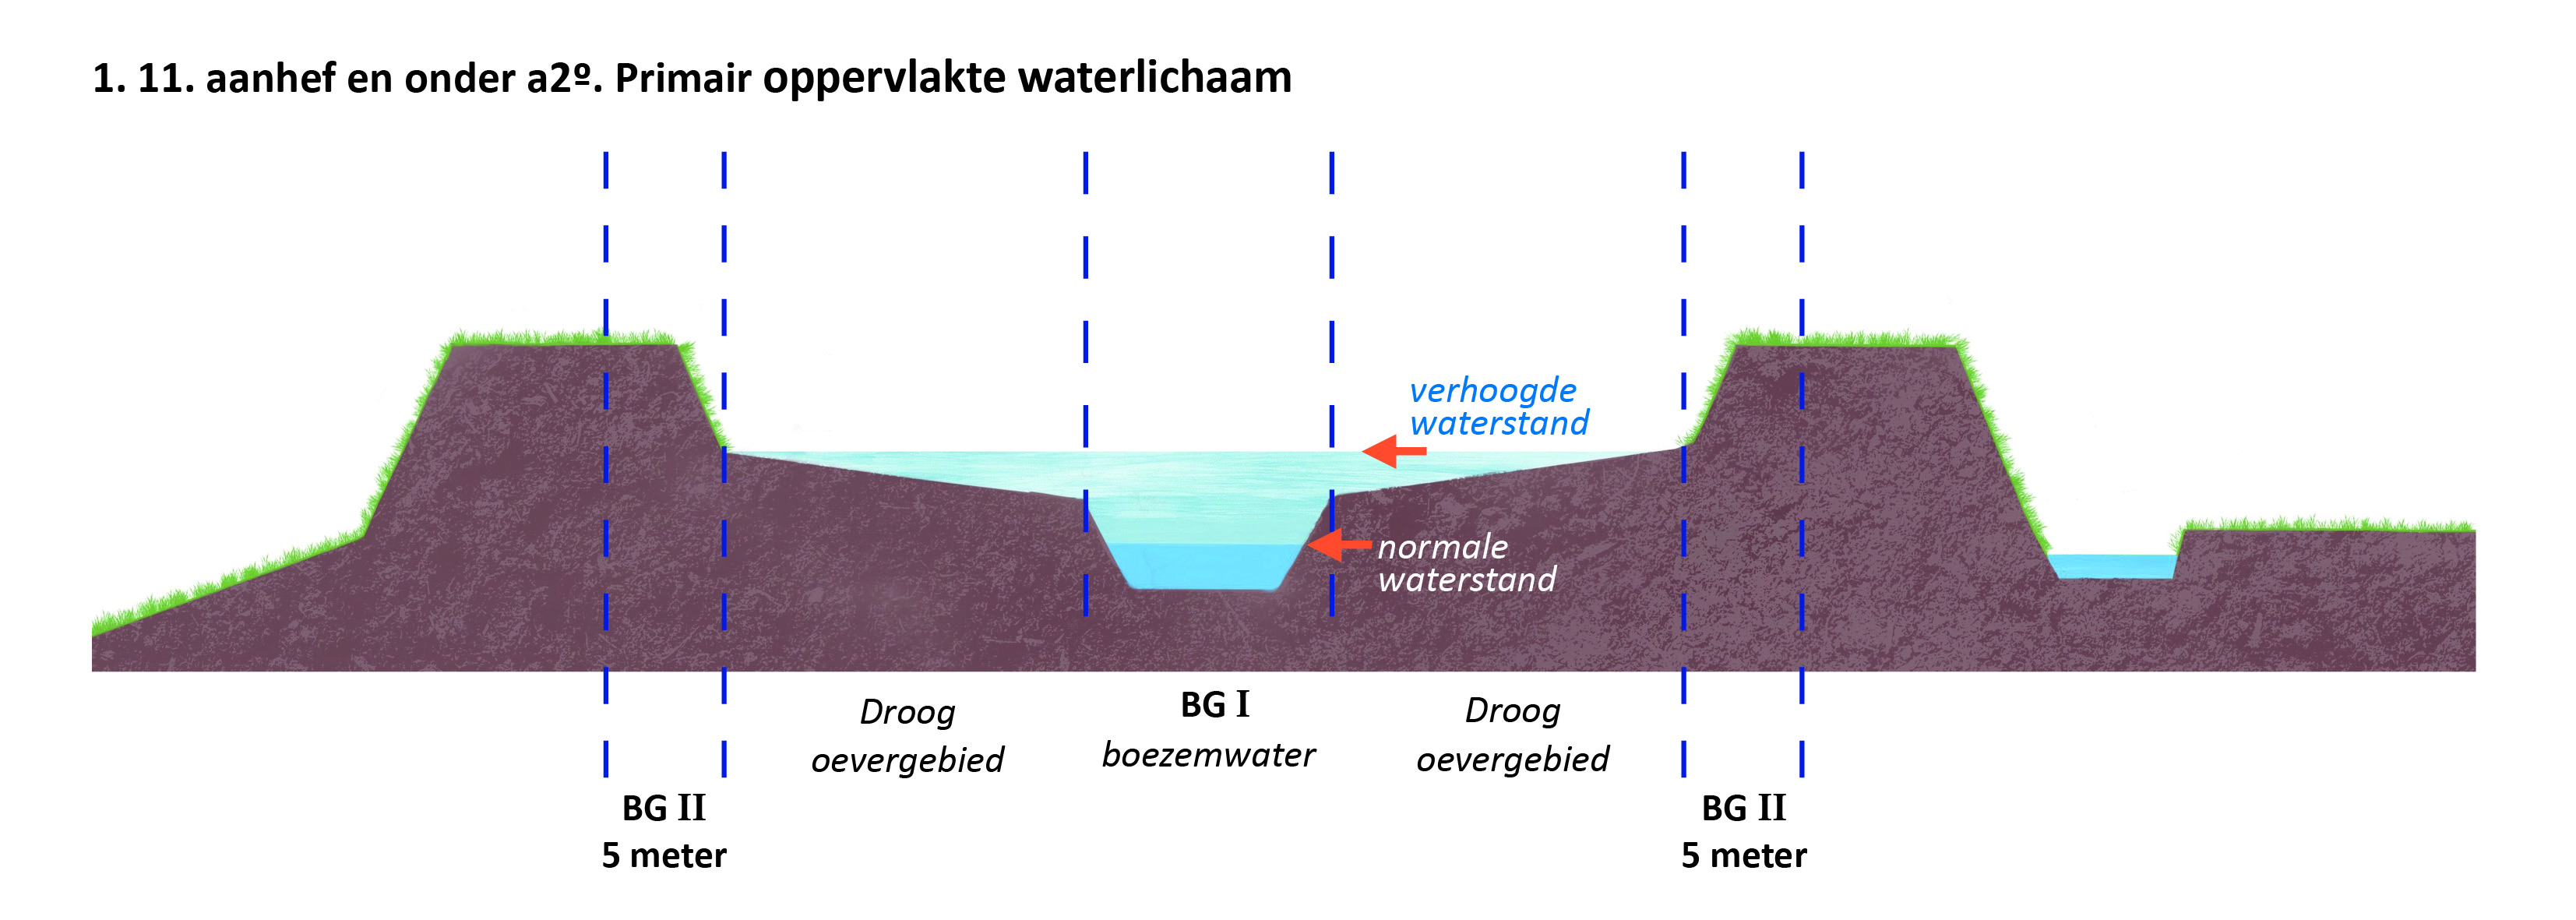 waterschapsverordening - bijlage 2 - 7-1.11.a2_